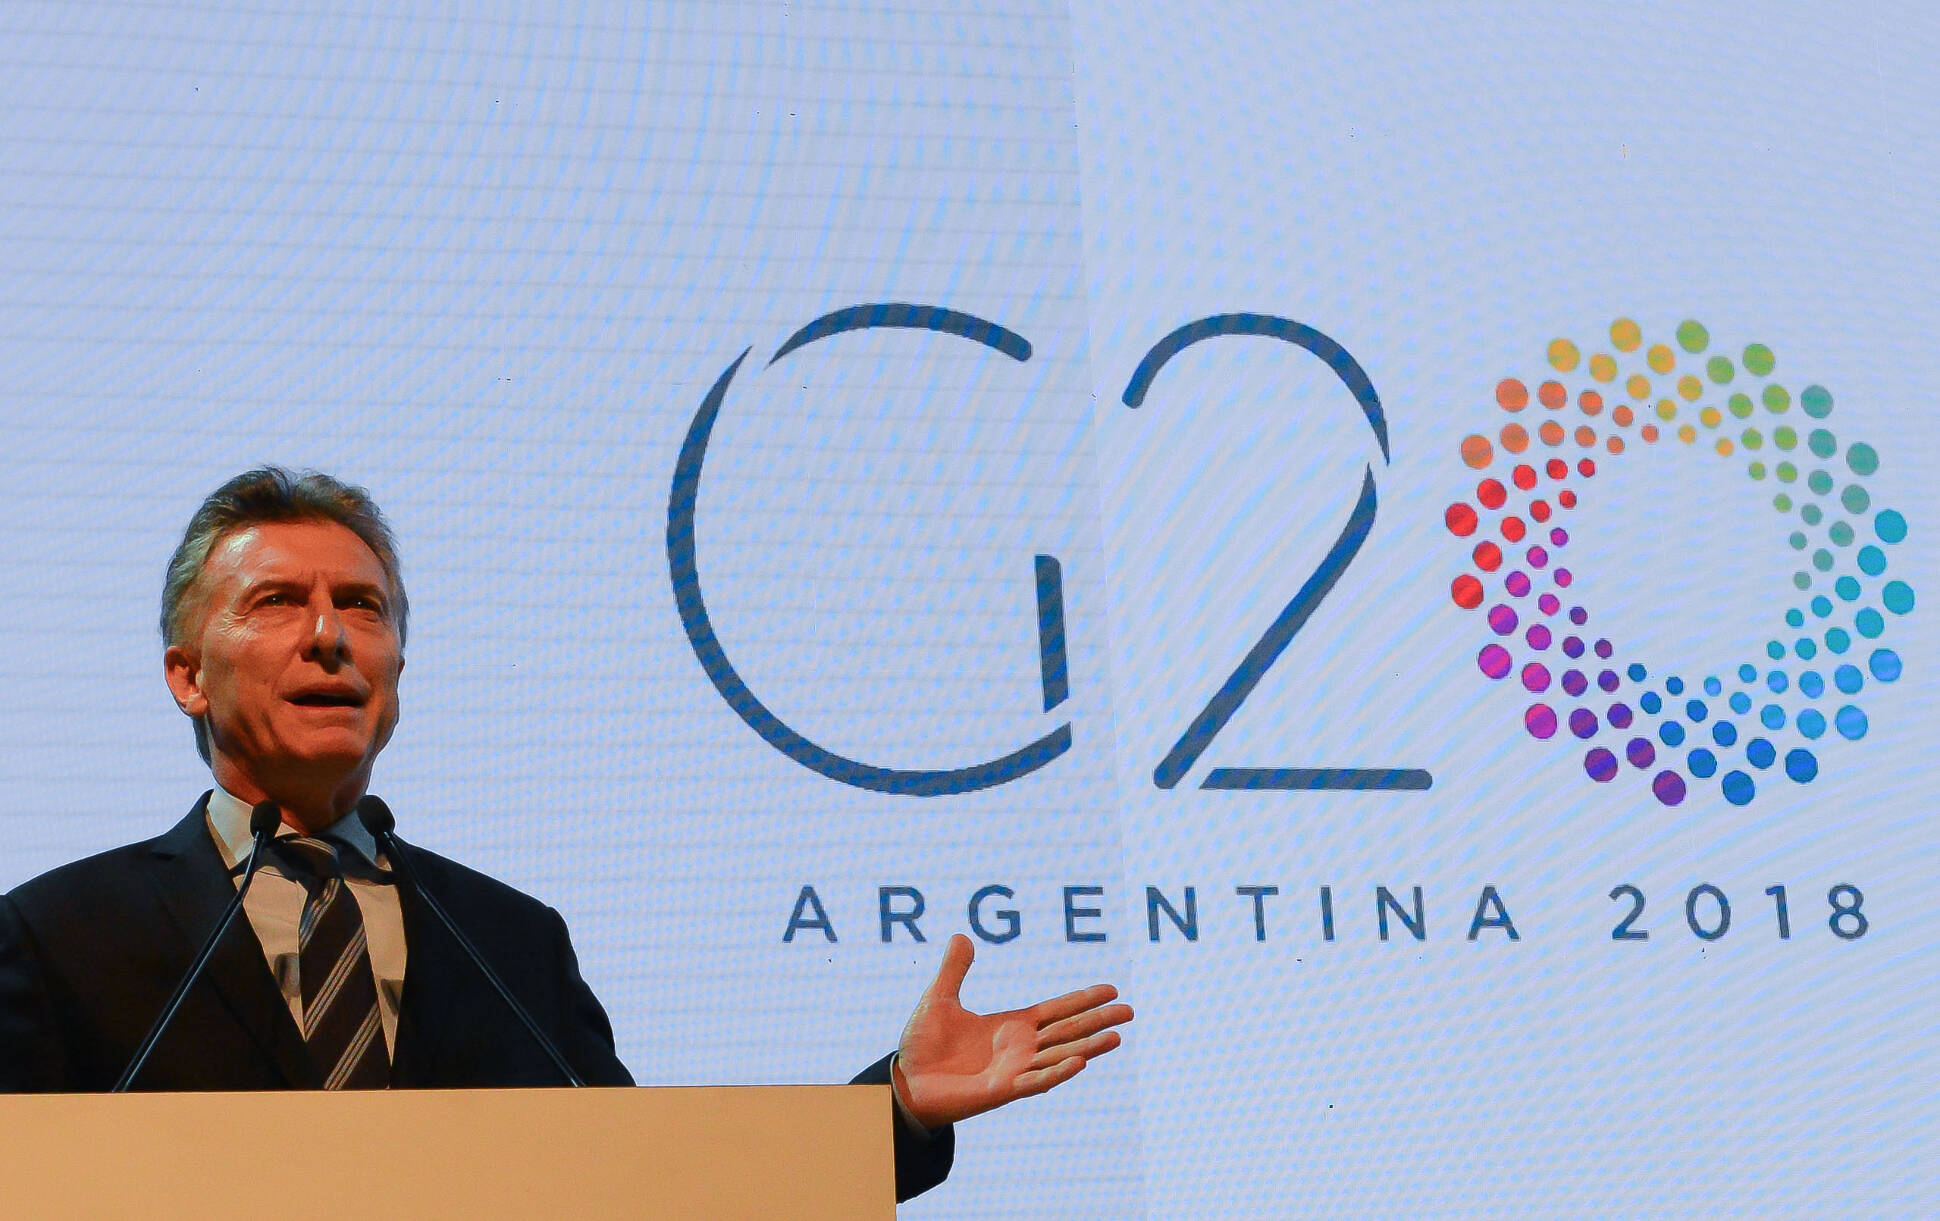 Estamos poniendo a la Argentina en un lugar relevante de un mundo al que le inspiramos confianza